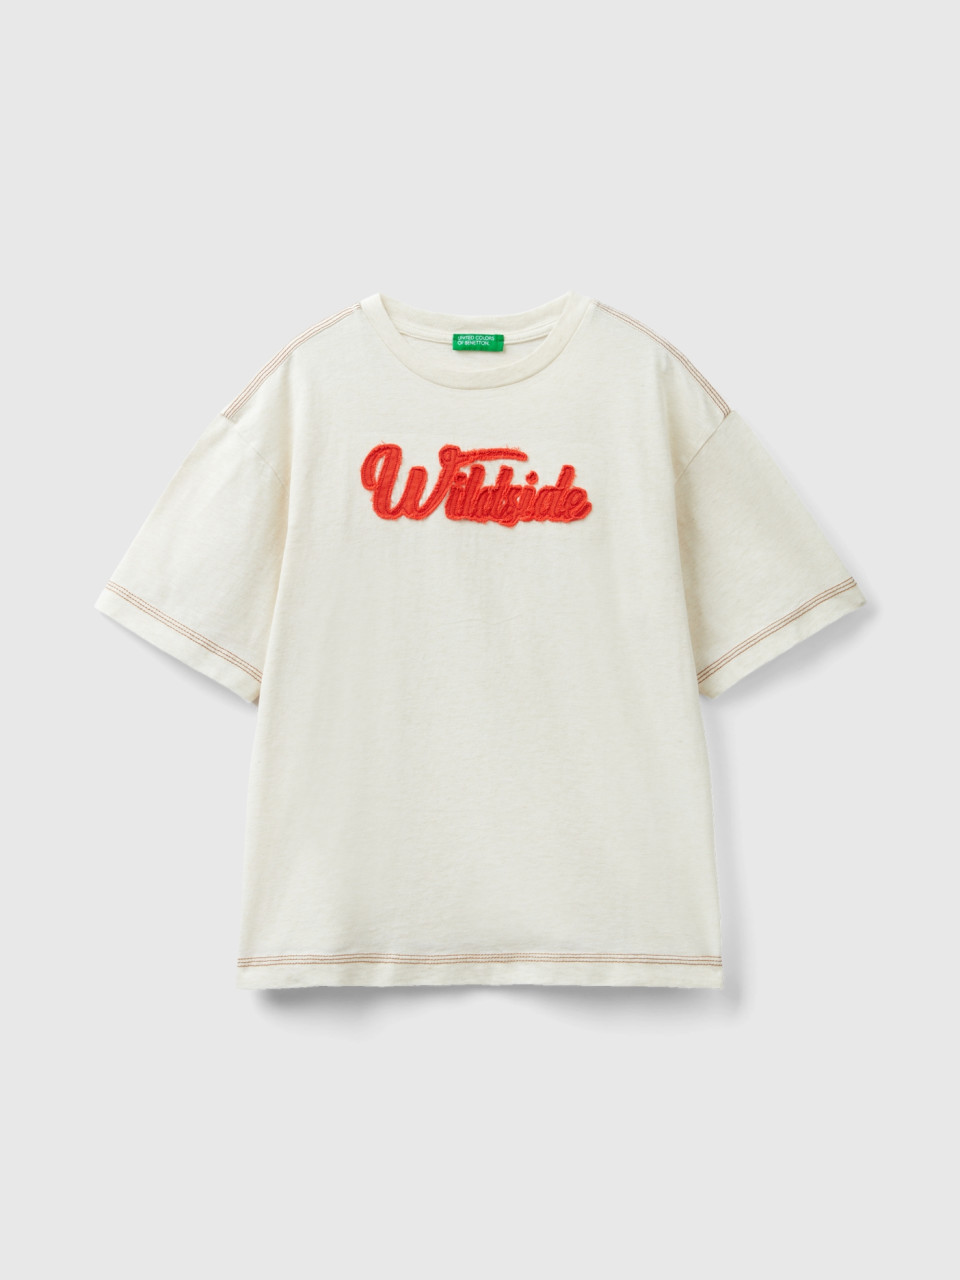 Benetton, Camiseta Con Aplicación, Blanco Crema, Niños